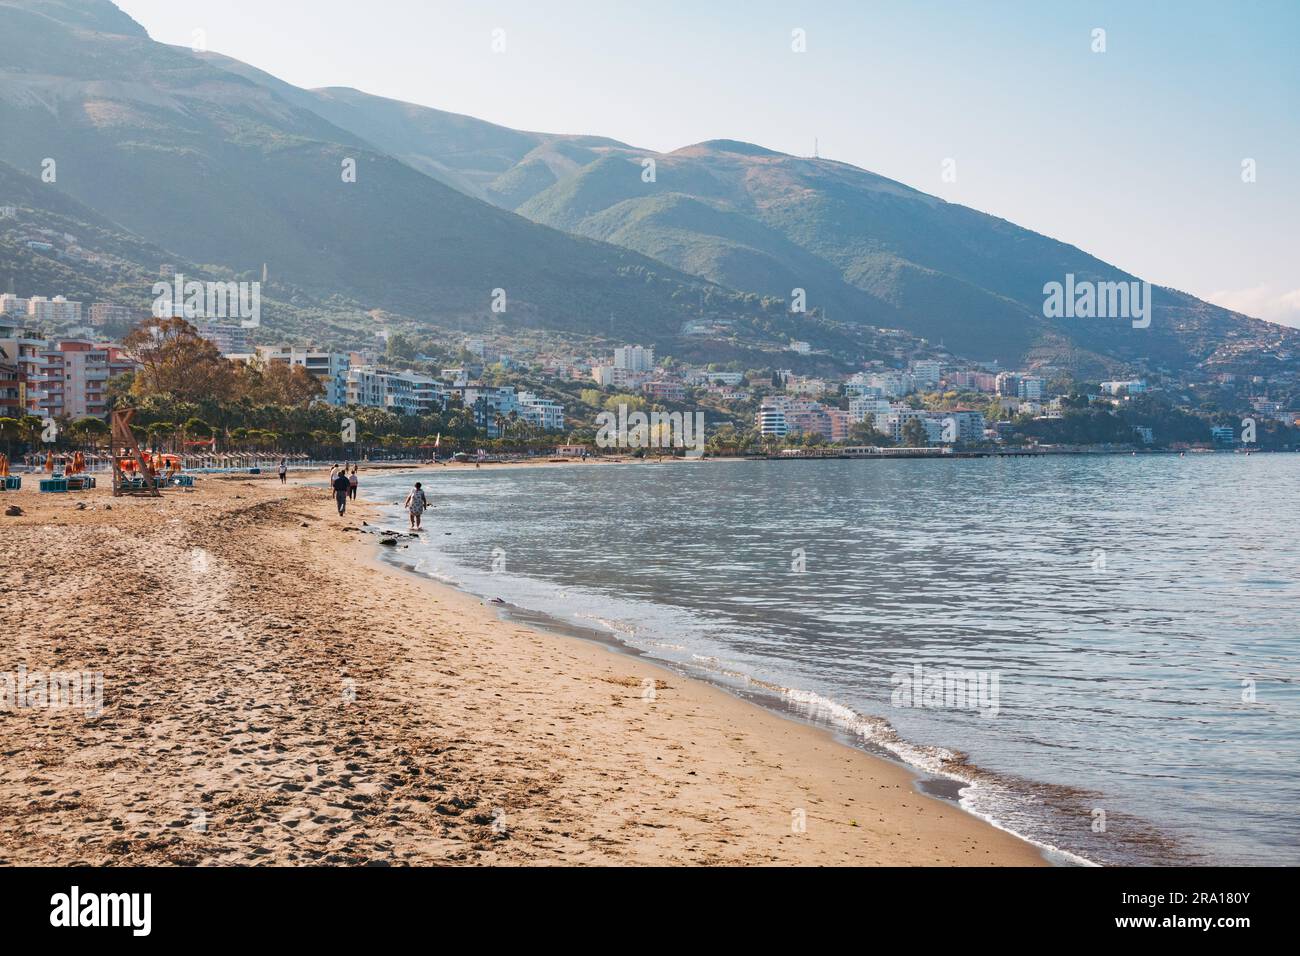 La città costiera di Vlorë, nell'Albania meridionale Foto Stock